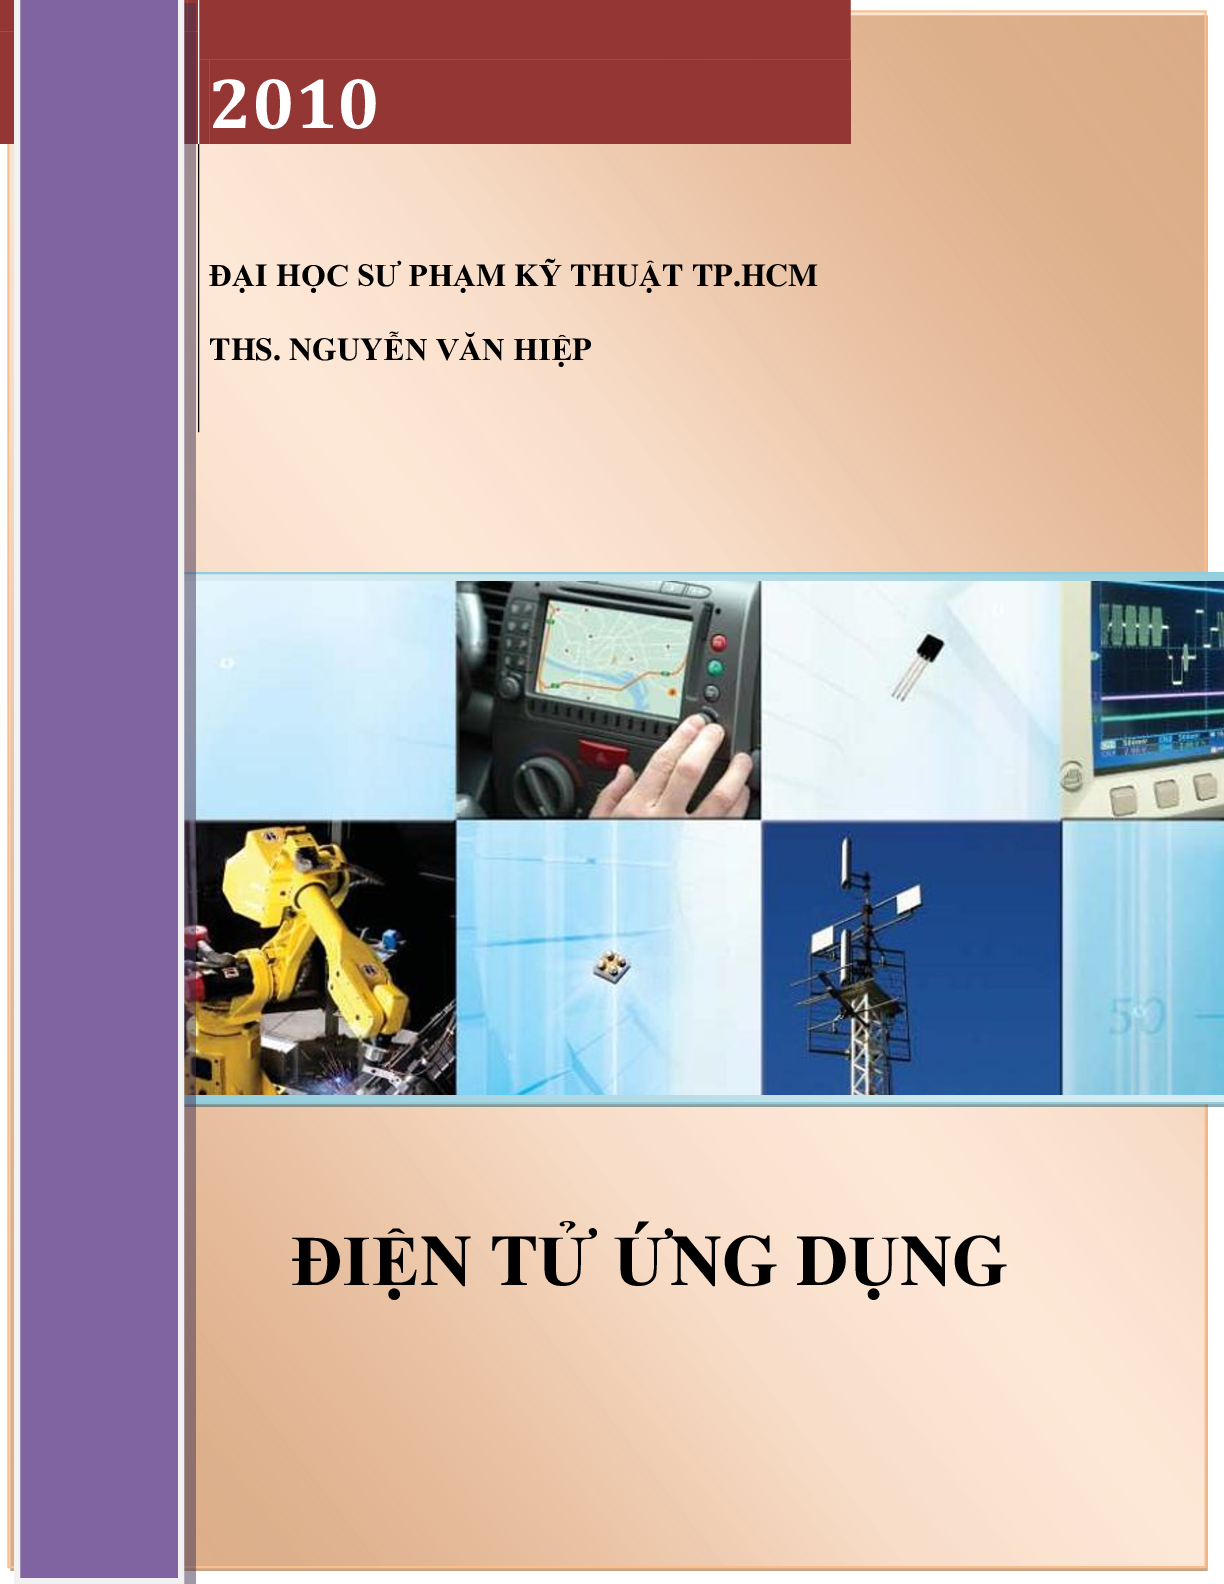 [ Sách ] Điện tử ứng dụng | Đại học Sư phạm kỹ thuật Thành phố Hồ Chí Minh (trang 1)